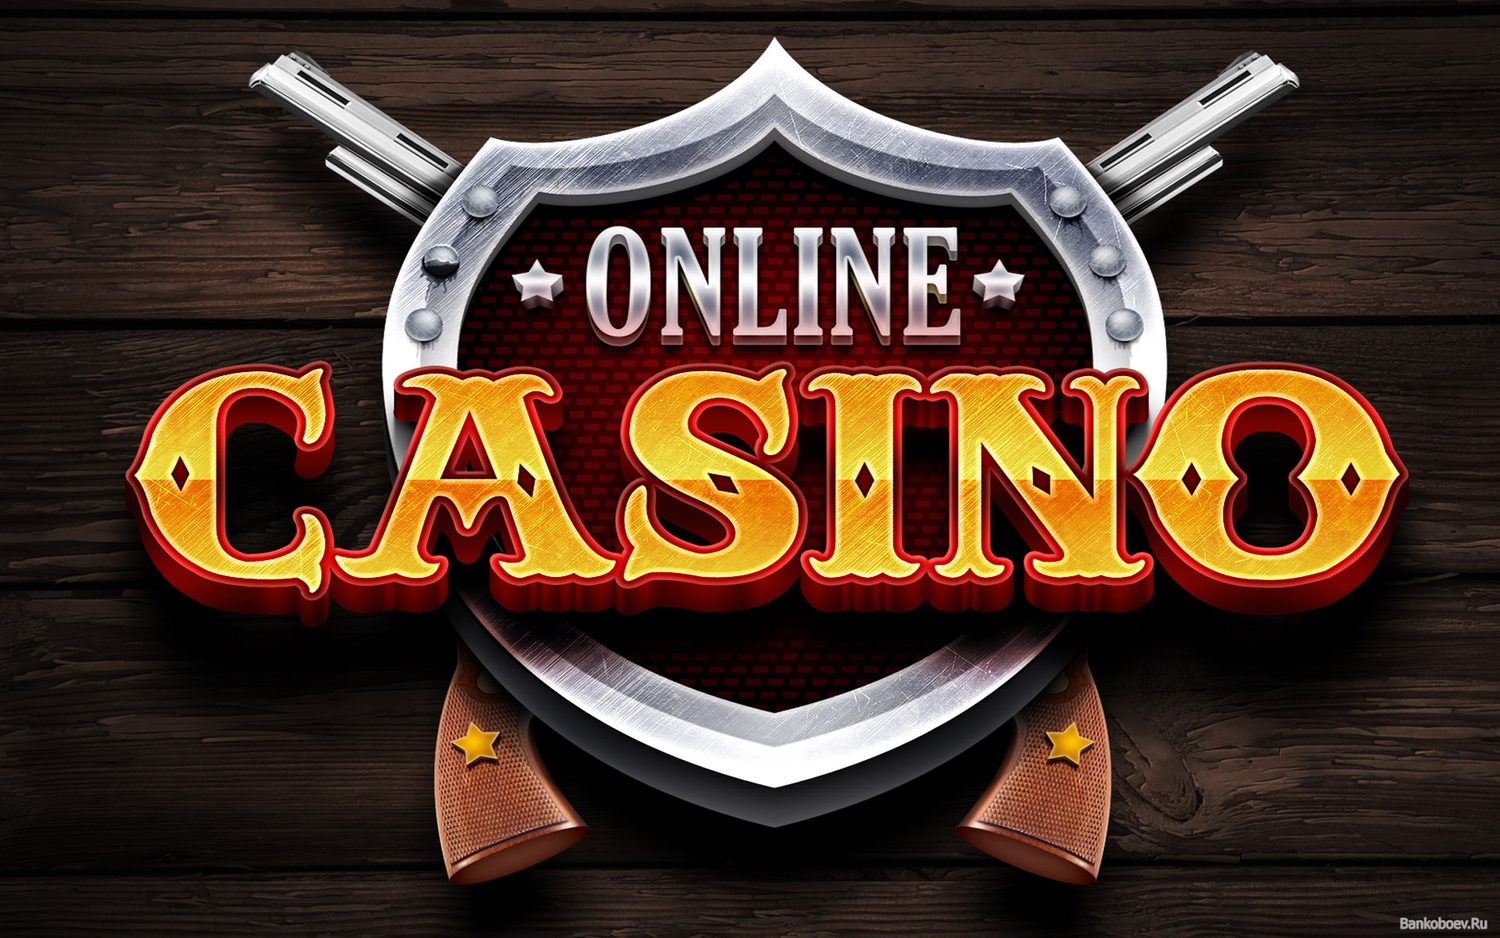 Интернет-казино: магия азарта и развлечений